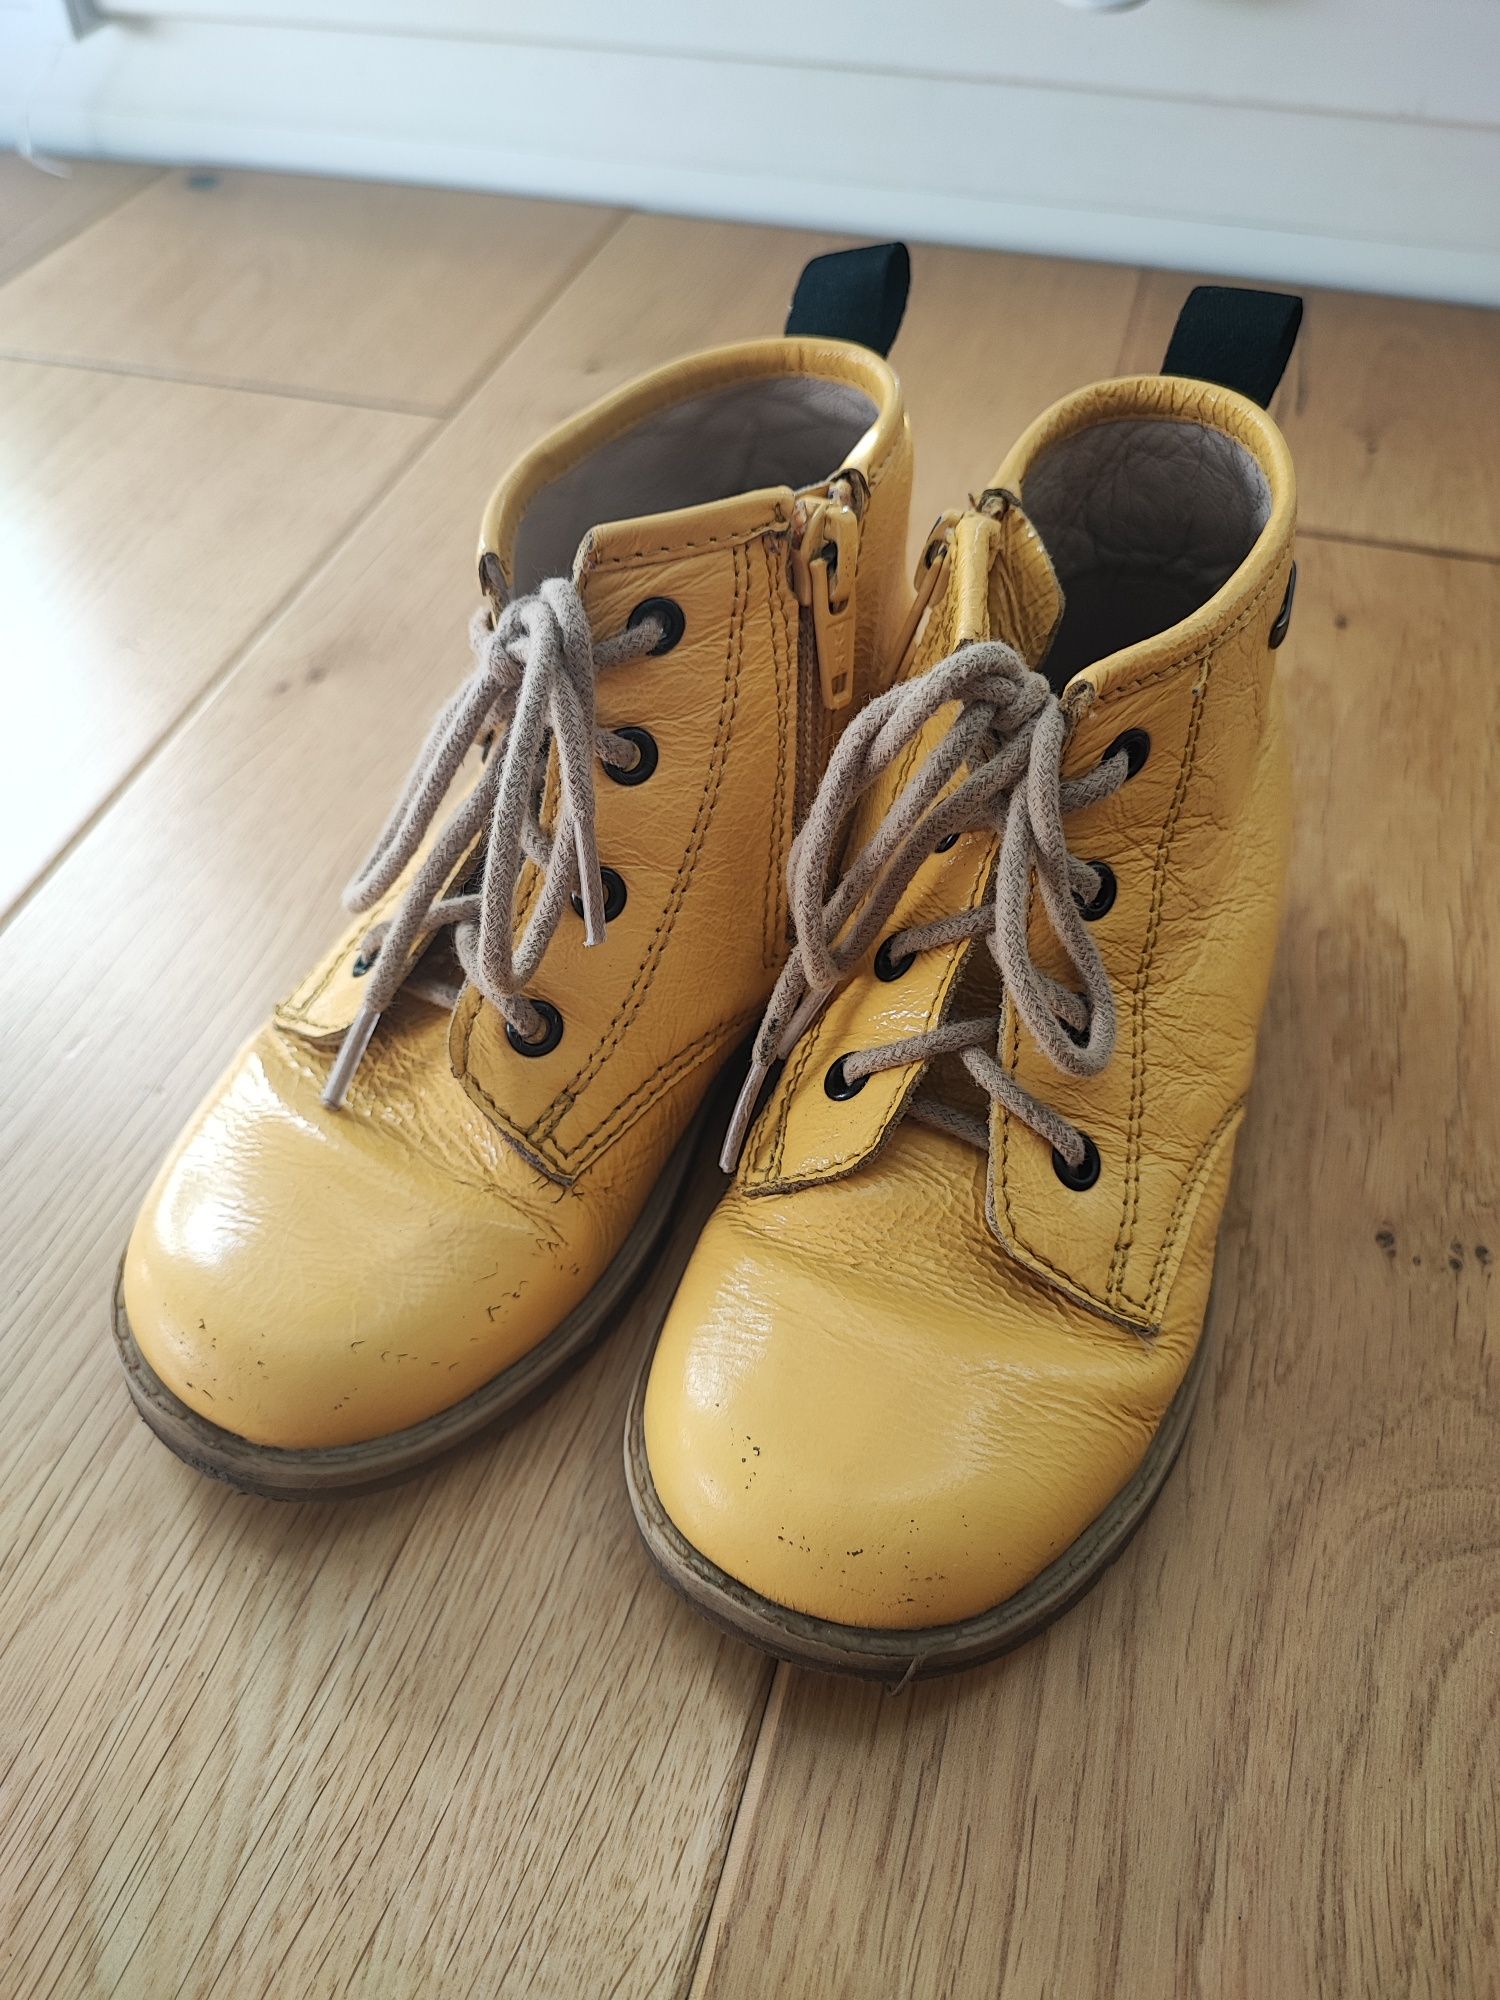 Buty Botki Lasocki dziewczęce chłopięce unisex żółte 26 17 cm